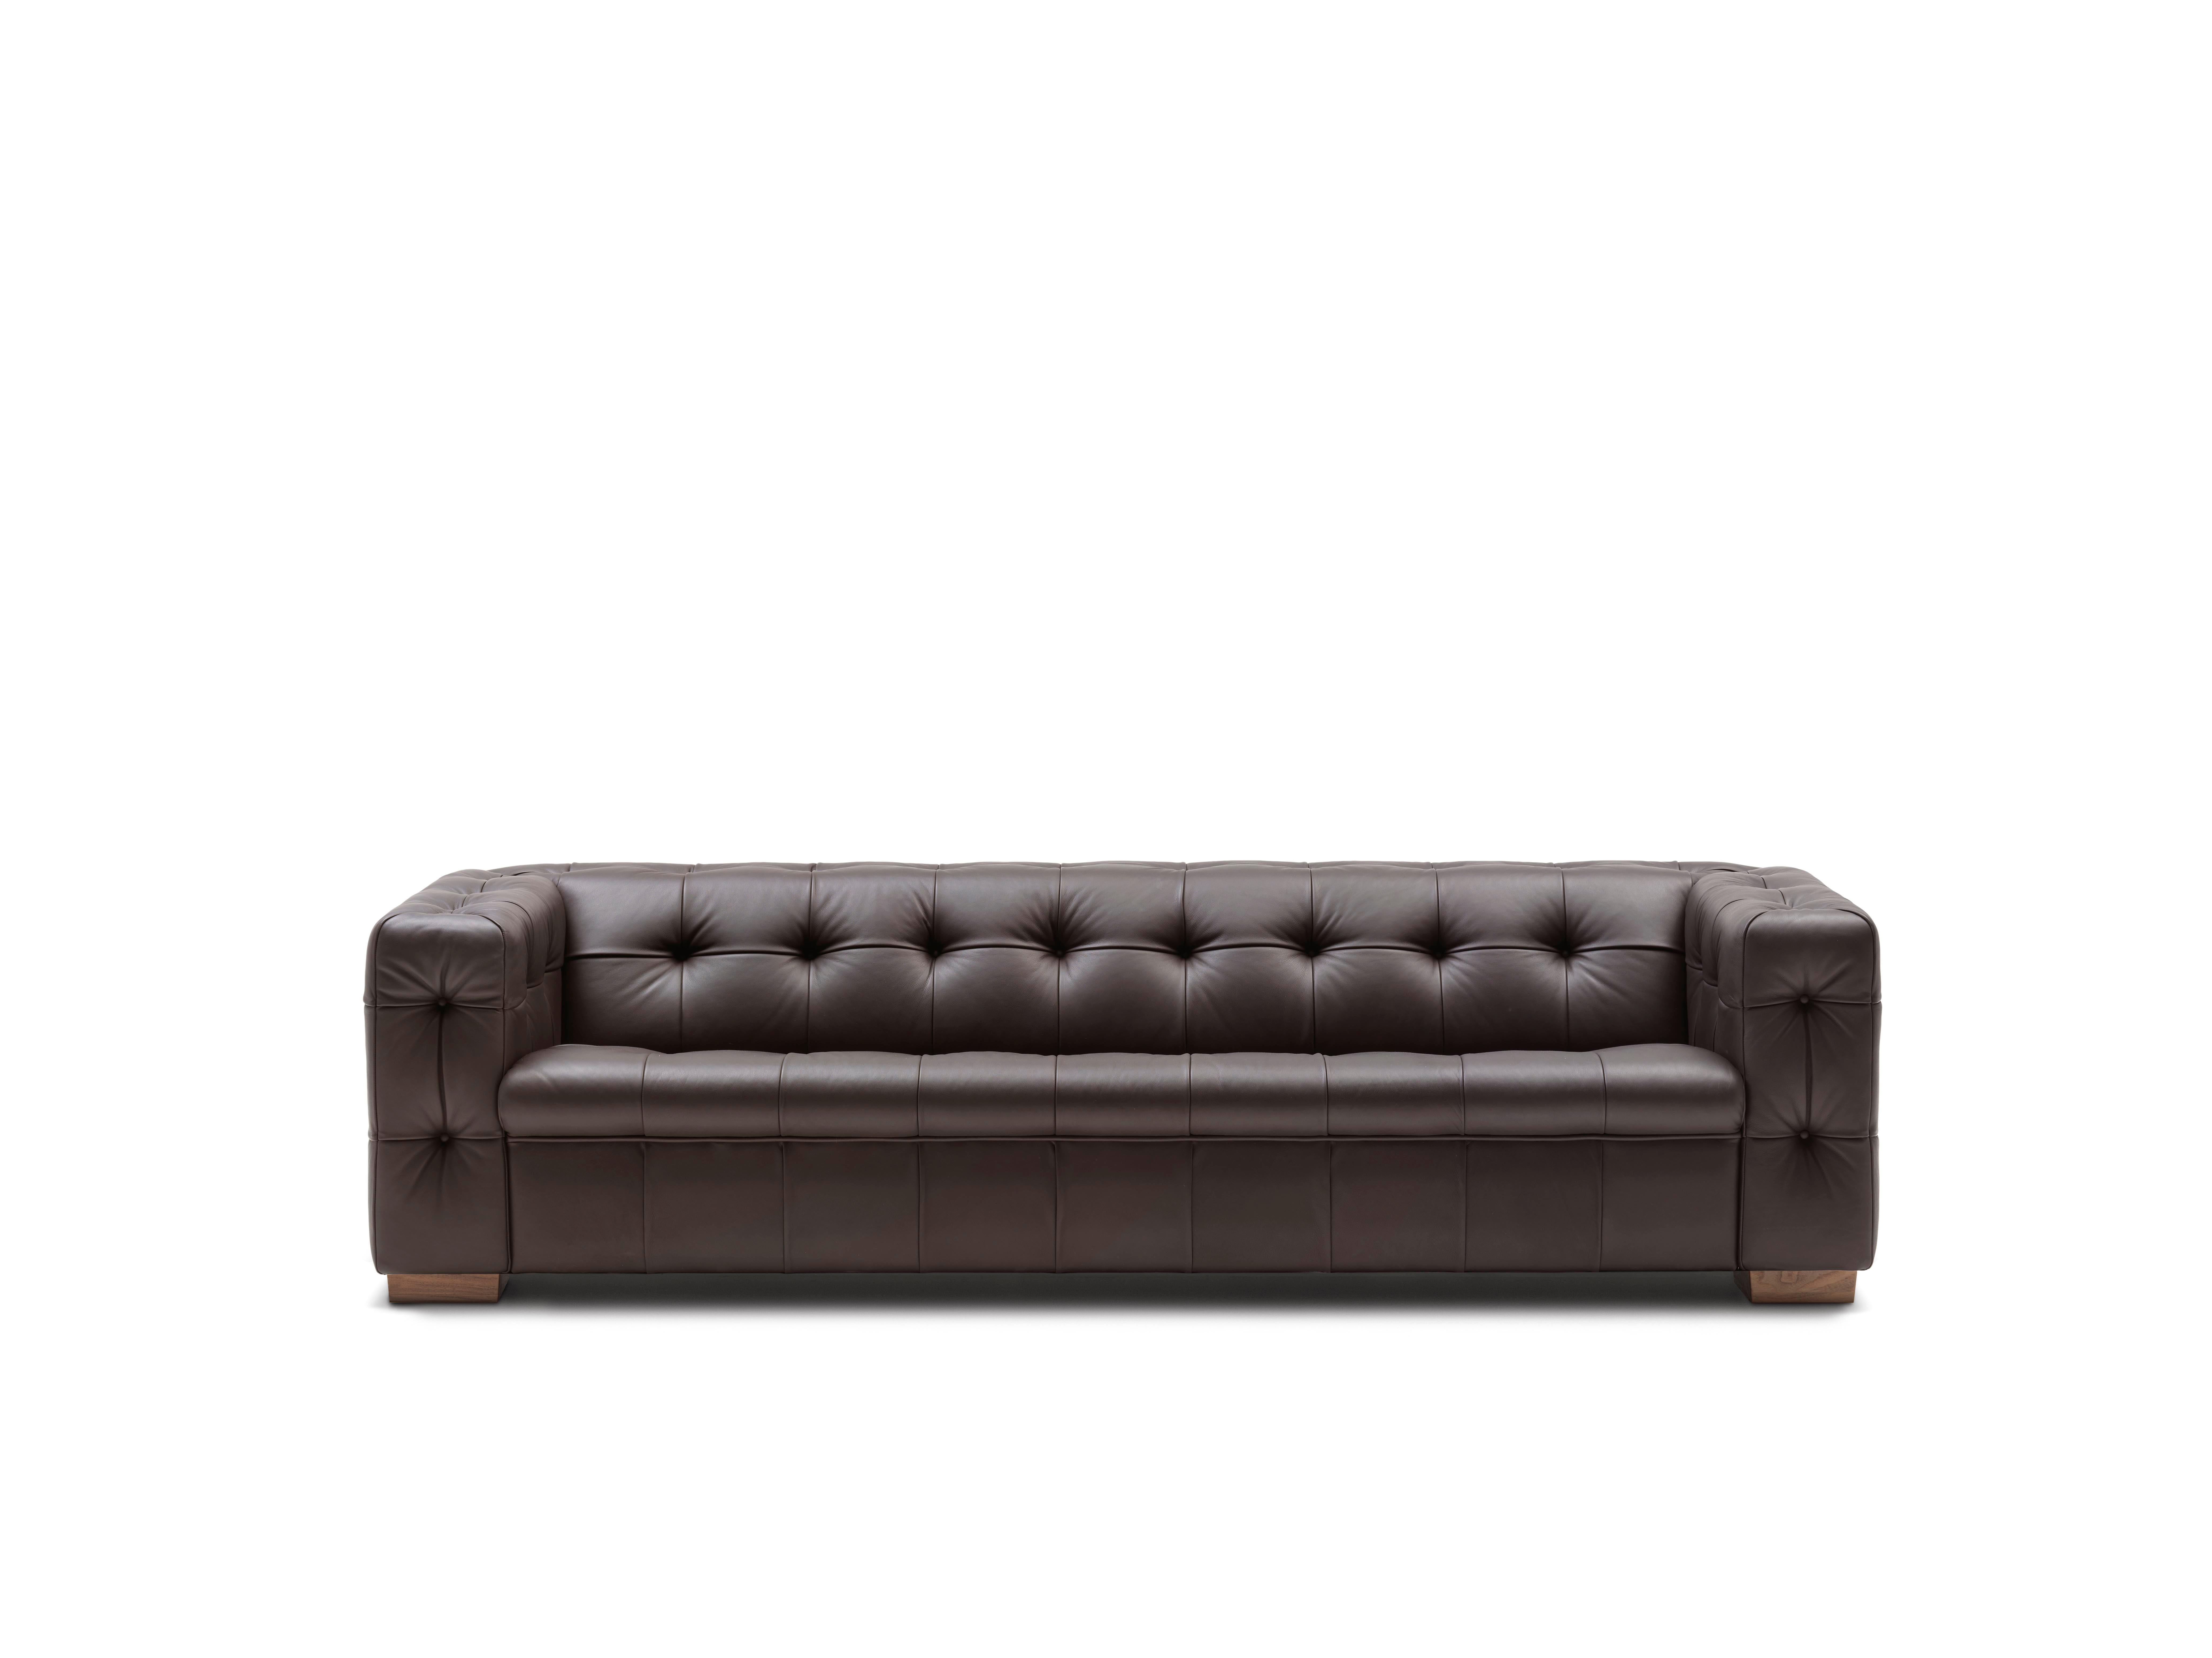 RH-306 Sofa von De Sede
Abmessungen: T 57 x B 248 x H 65 cm
MATERIALIEN: Hochglänzend verchromte Metallfüße. SEDEX-Polsterung mit Wattekissen (Leder). 

Die Preise können sich je nach den gewählten Materialien und der Größe ändern. 

Relaunch und